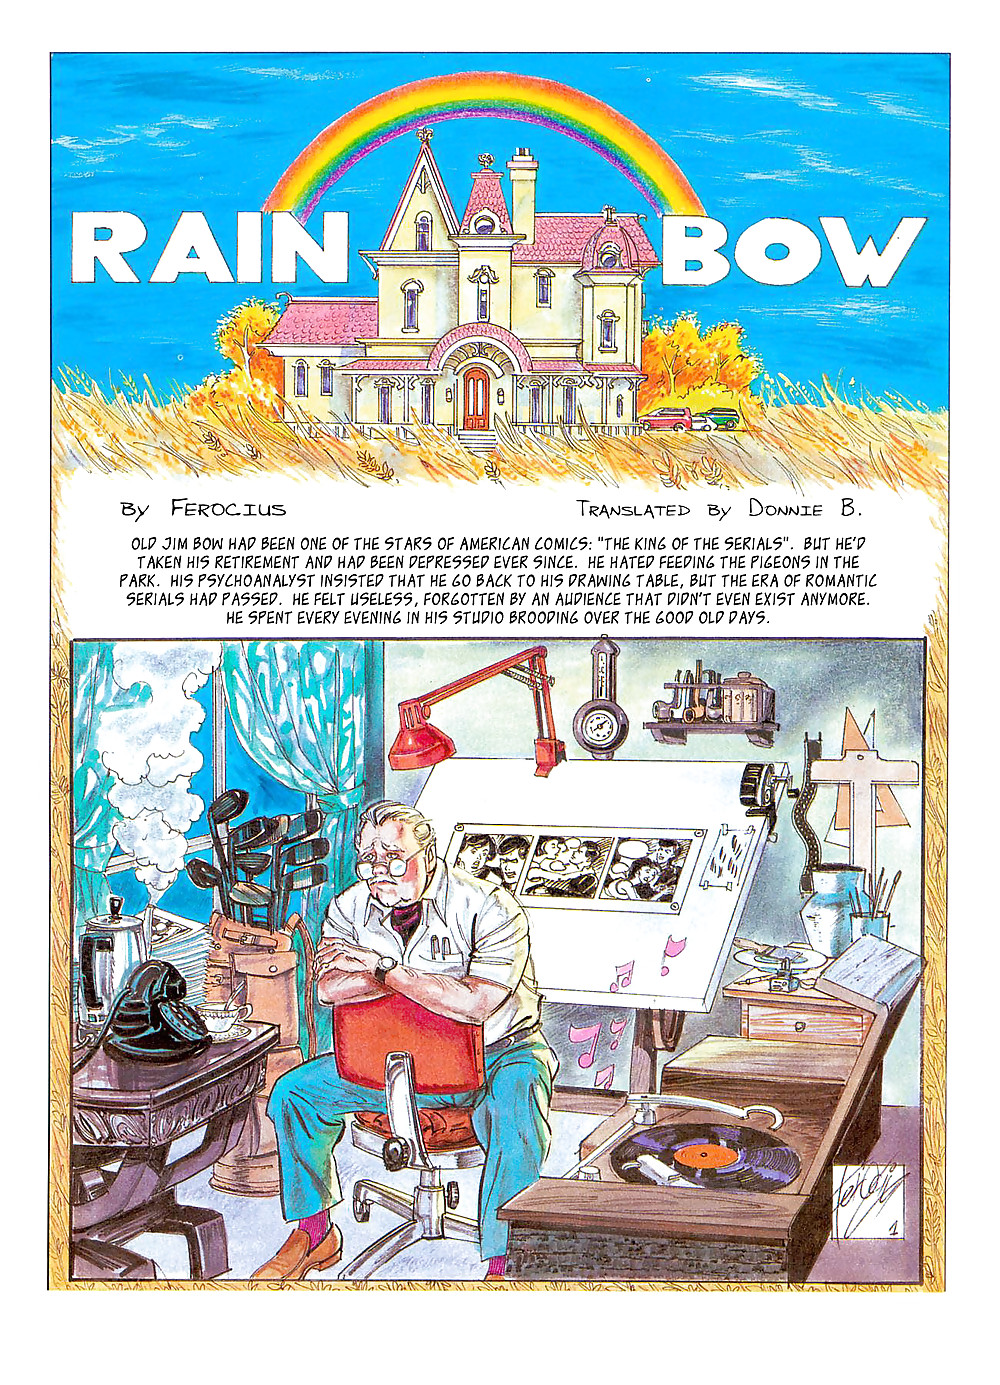 RAINBOW (aka Secret Life Of A Cartoonist)